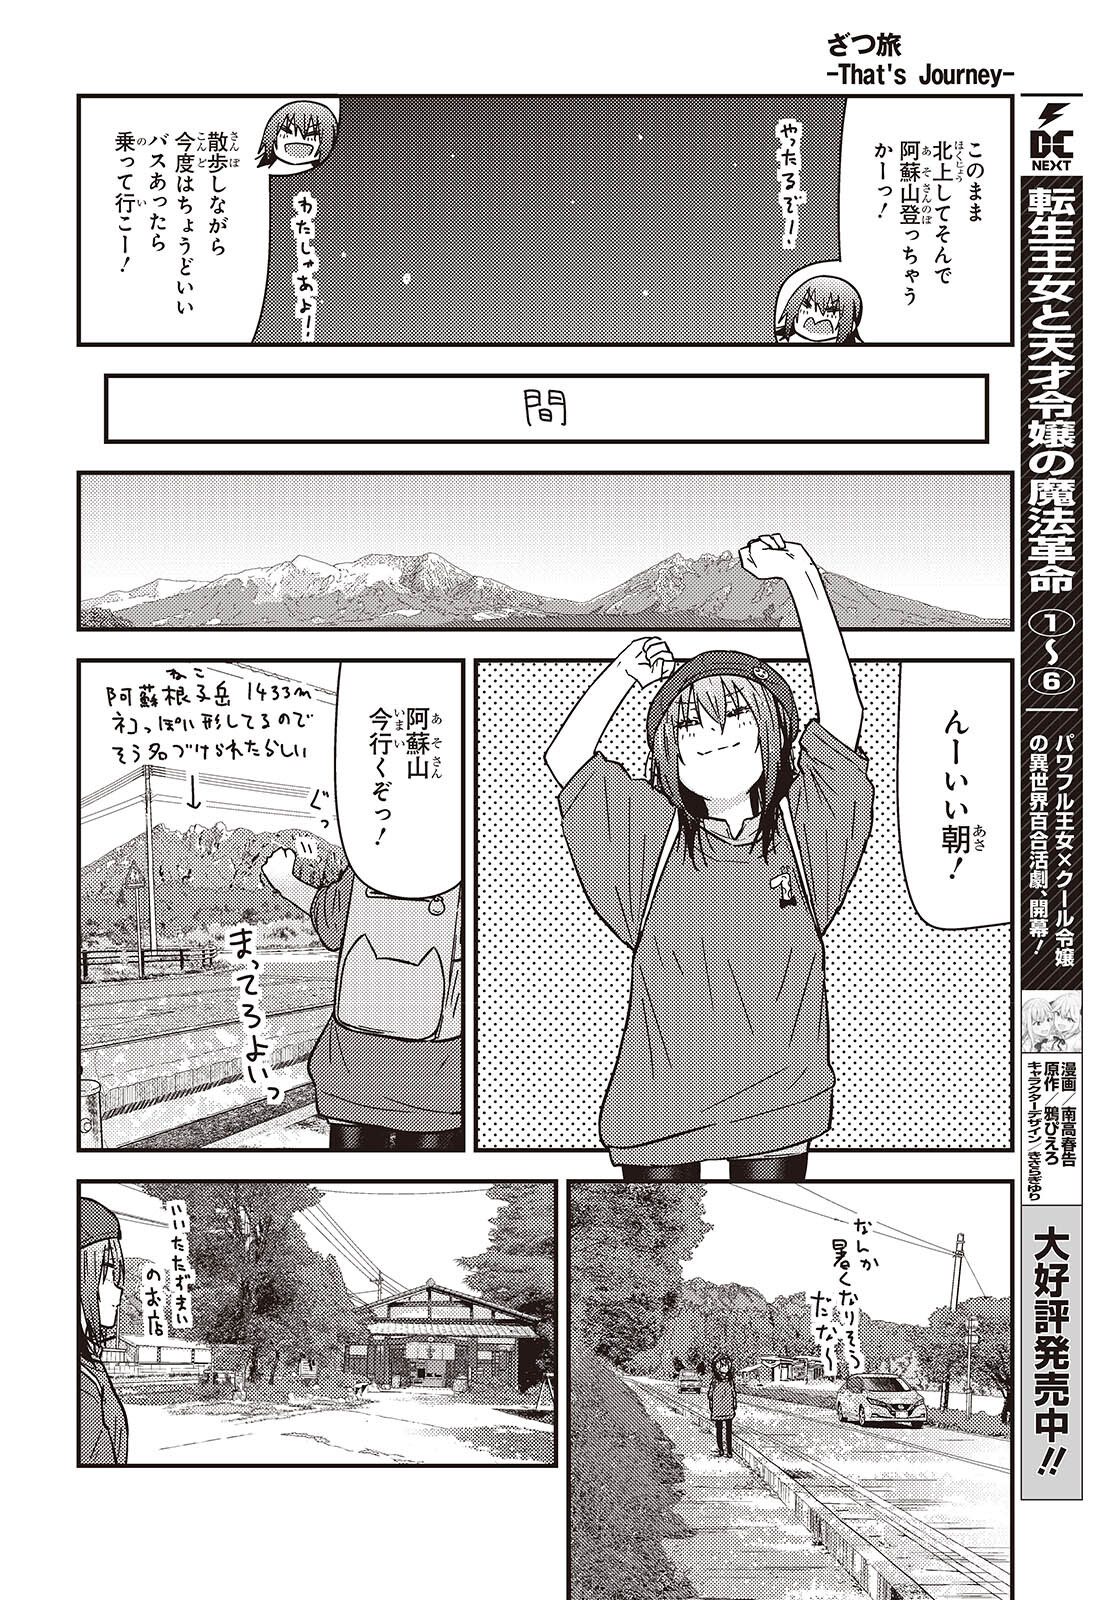 ざつ旅–That?s Journey– 第35話 - Page 16